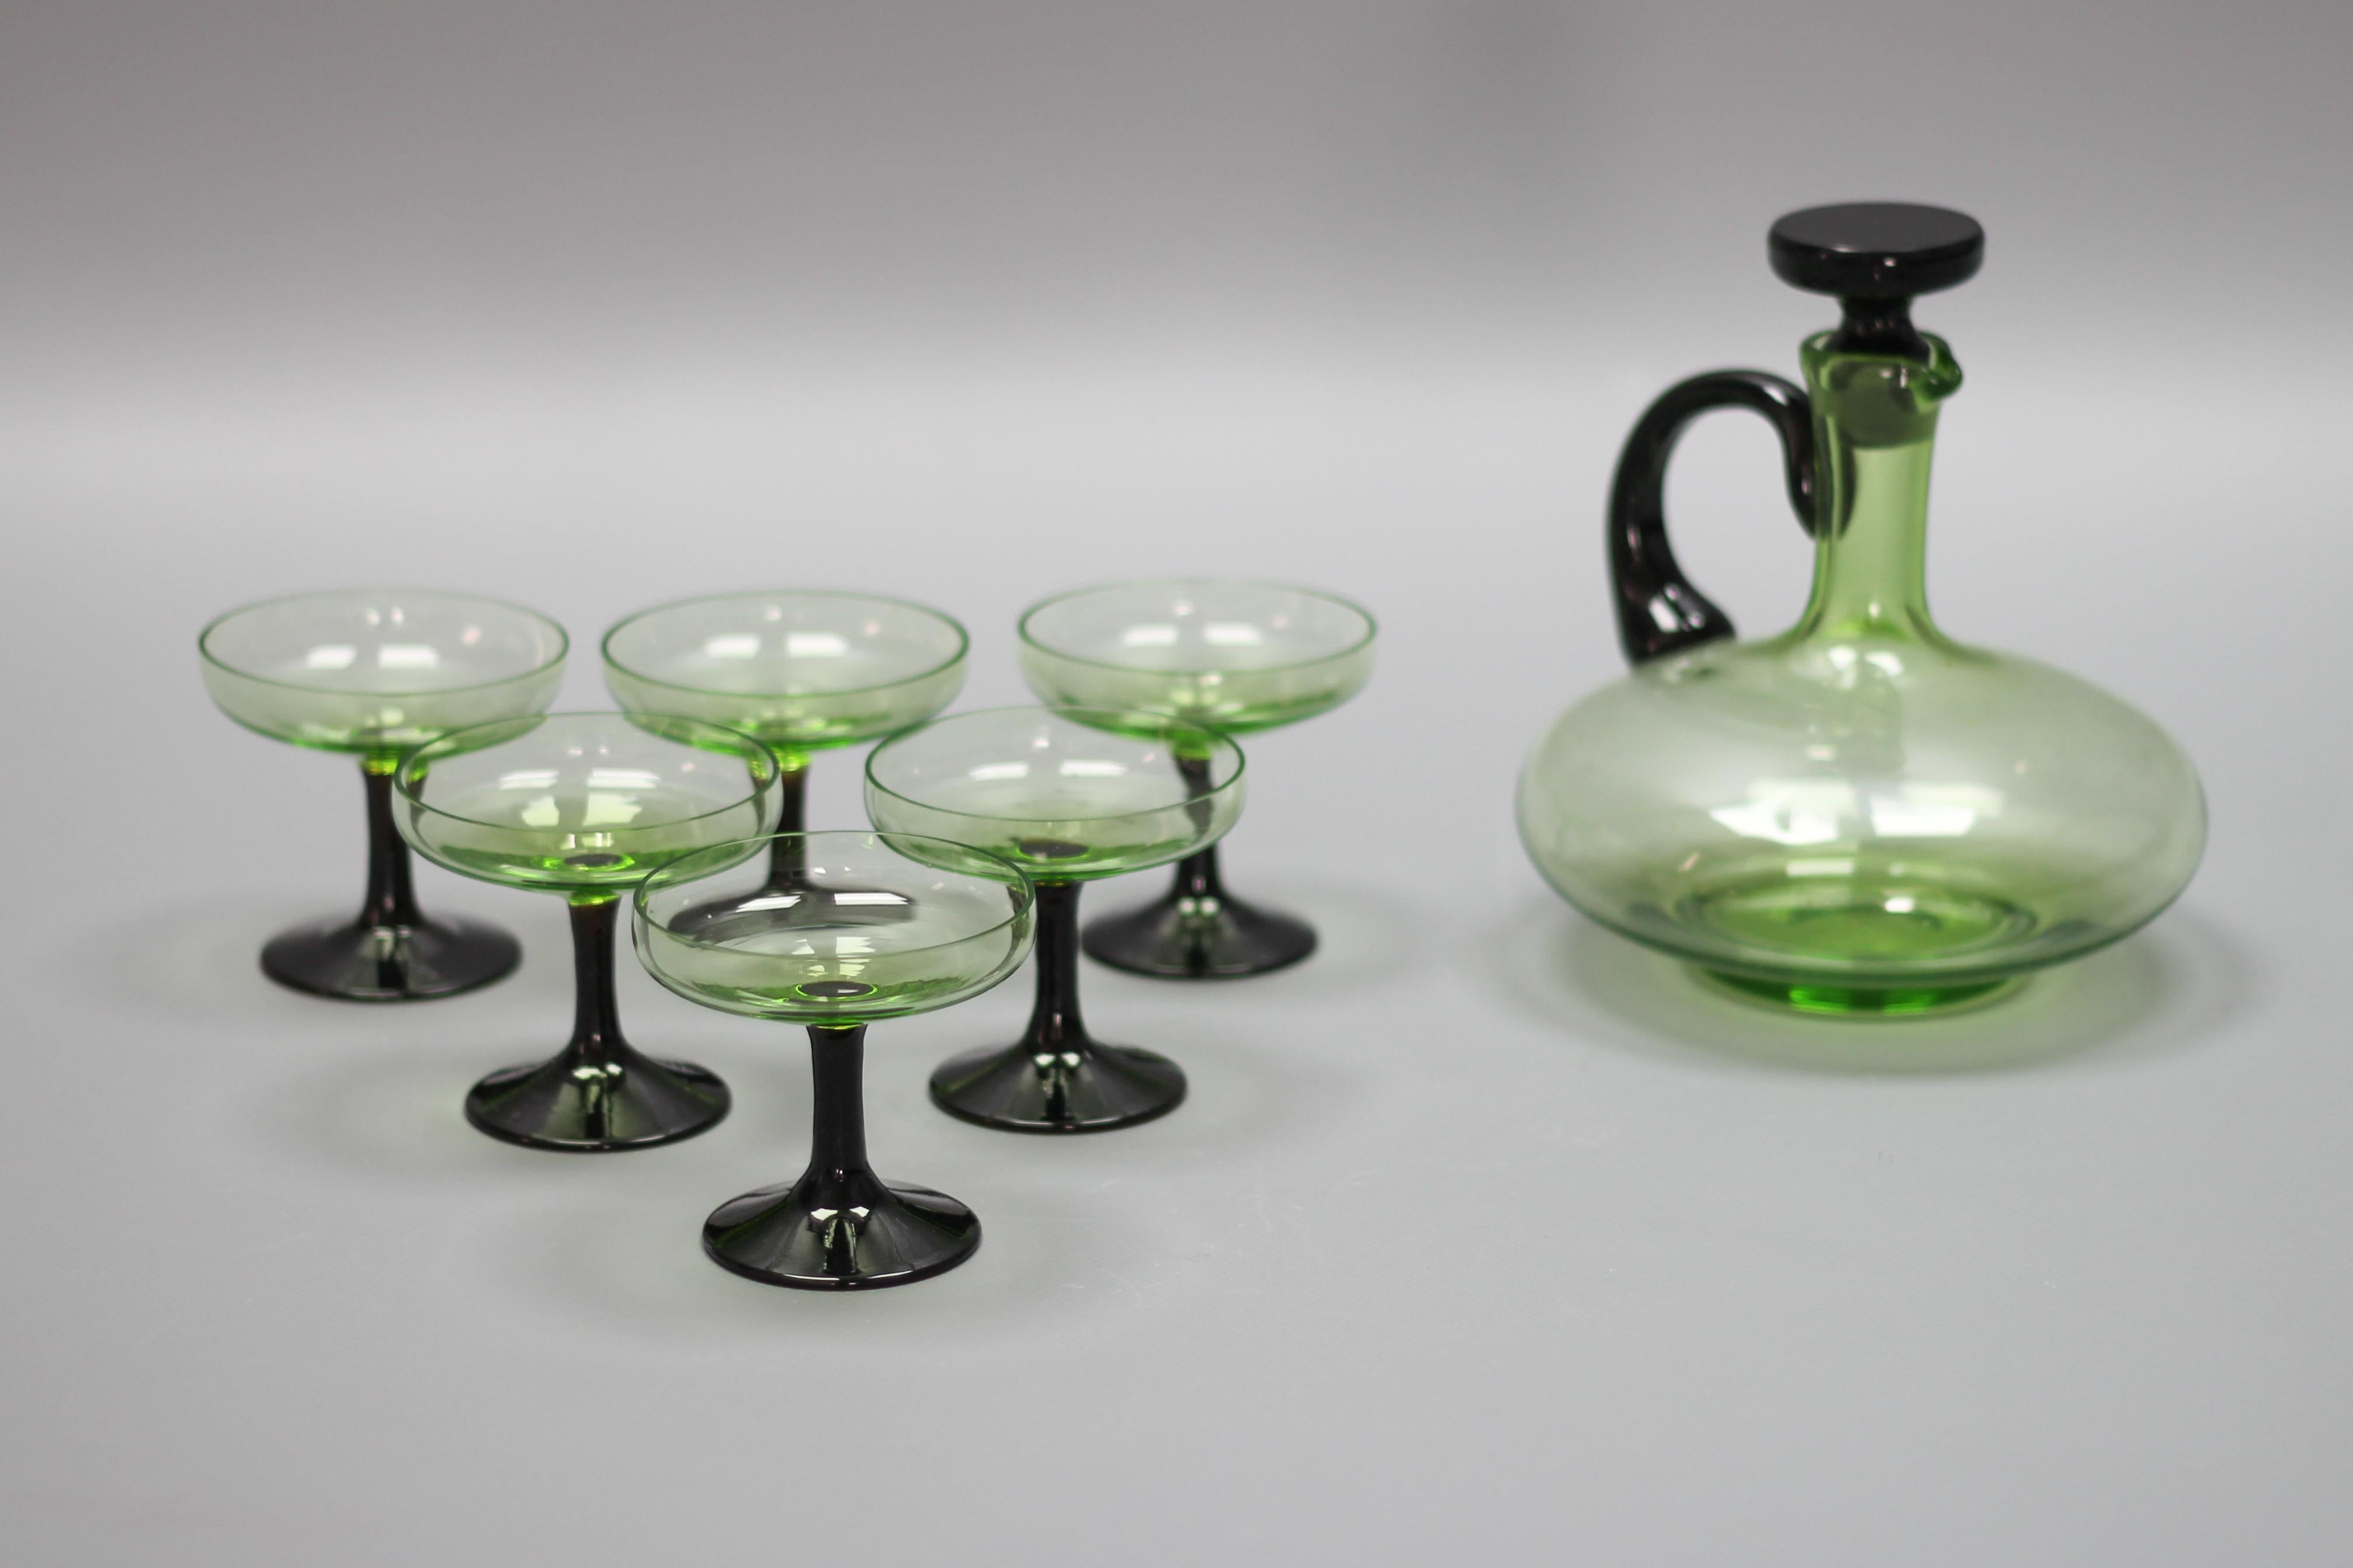 Modernes Set aus grüner und schwarzer Glaskaraffe und sechs Gläsern aus der Jahrhundertmitte, Deutschland, um 1950.
Dieses bezaubernde Vintage-Set besteht aus sechs hellgrünen Gläsern mit schwarzen Stielen und einer formschönen hellgrünen Karaffe